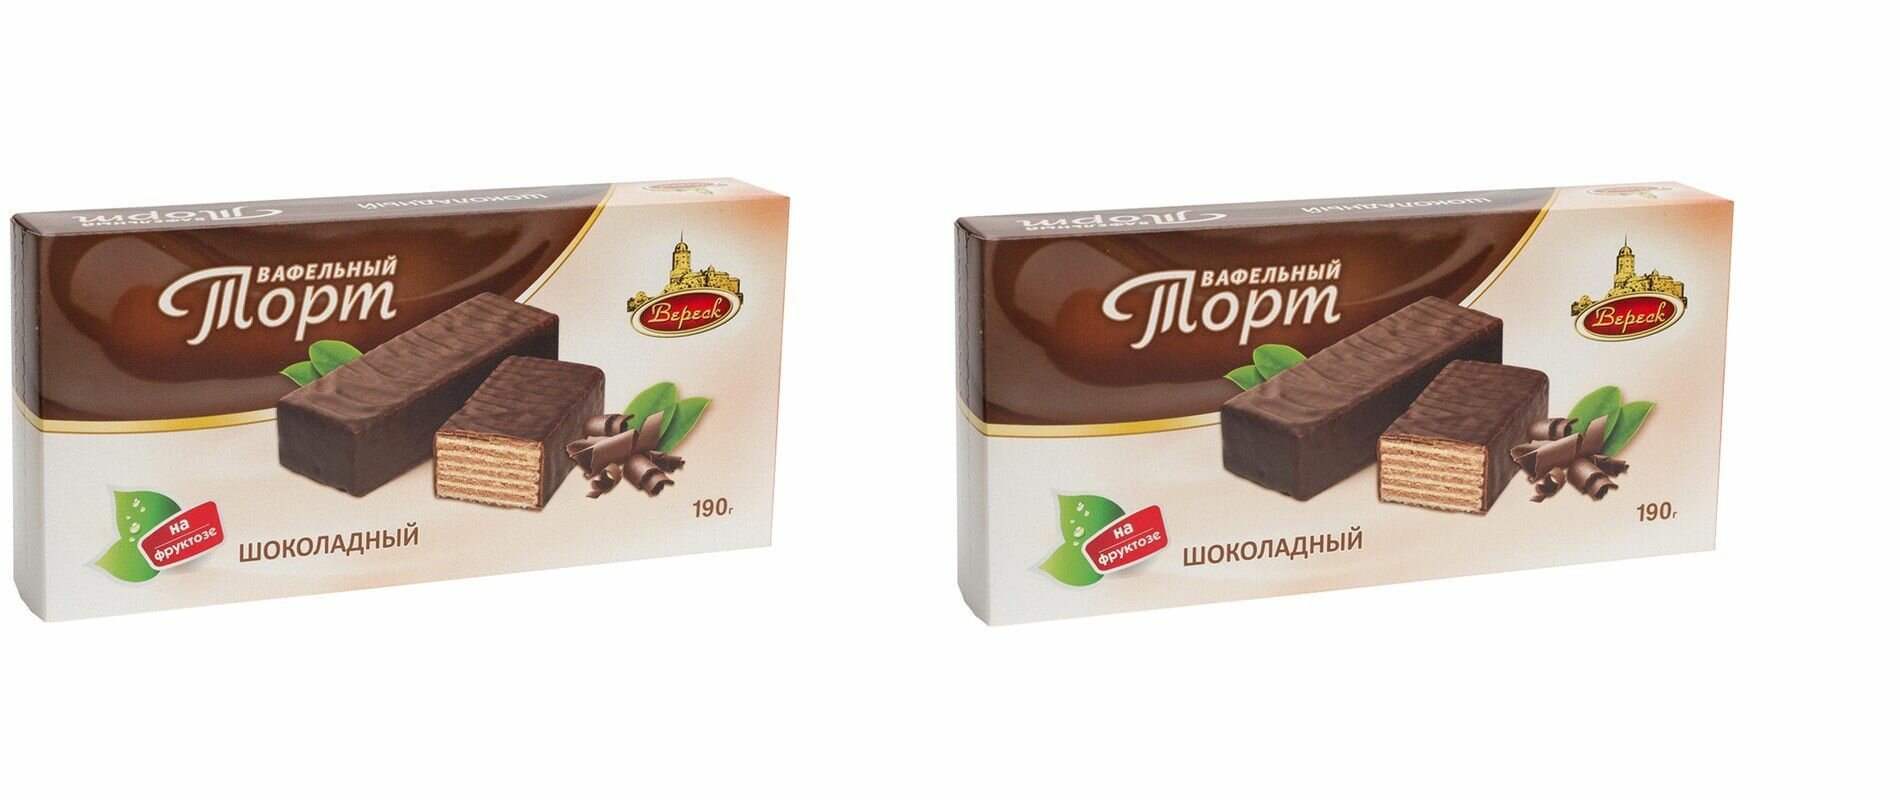 Вереск Торт вафельный Шоколадный, на фруктозе, 190 г, 2 шт